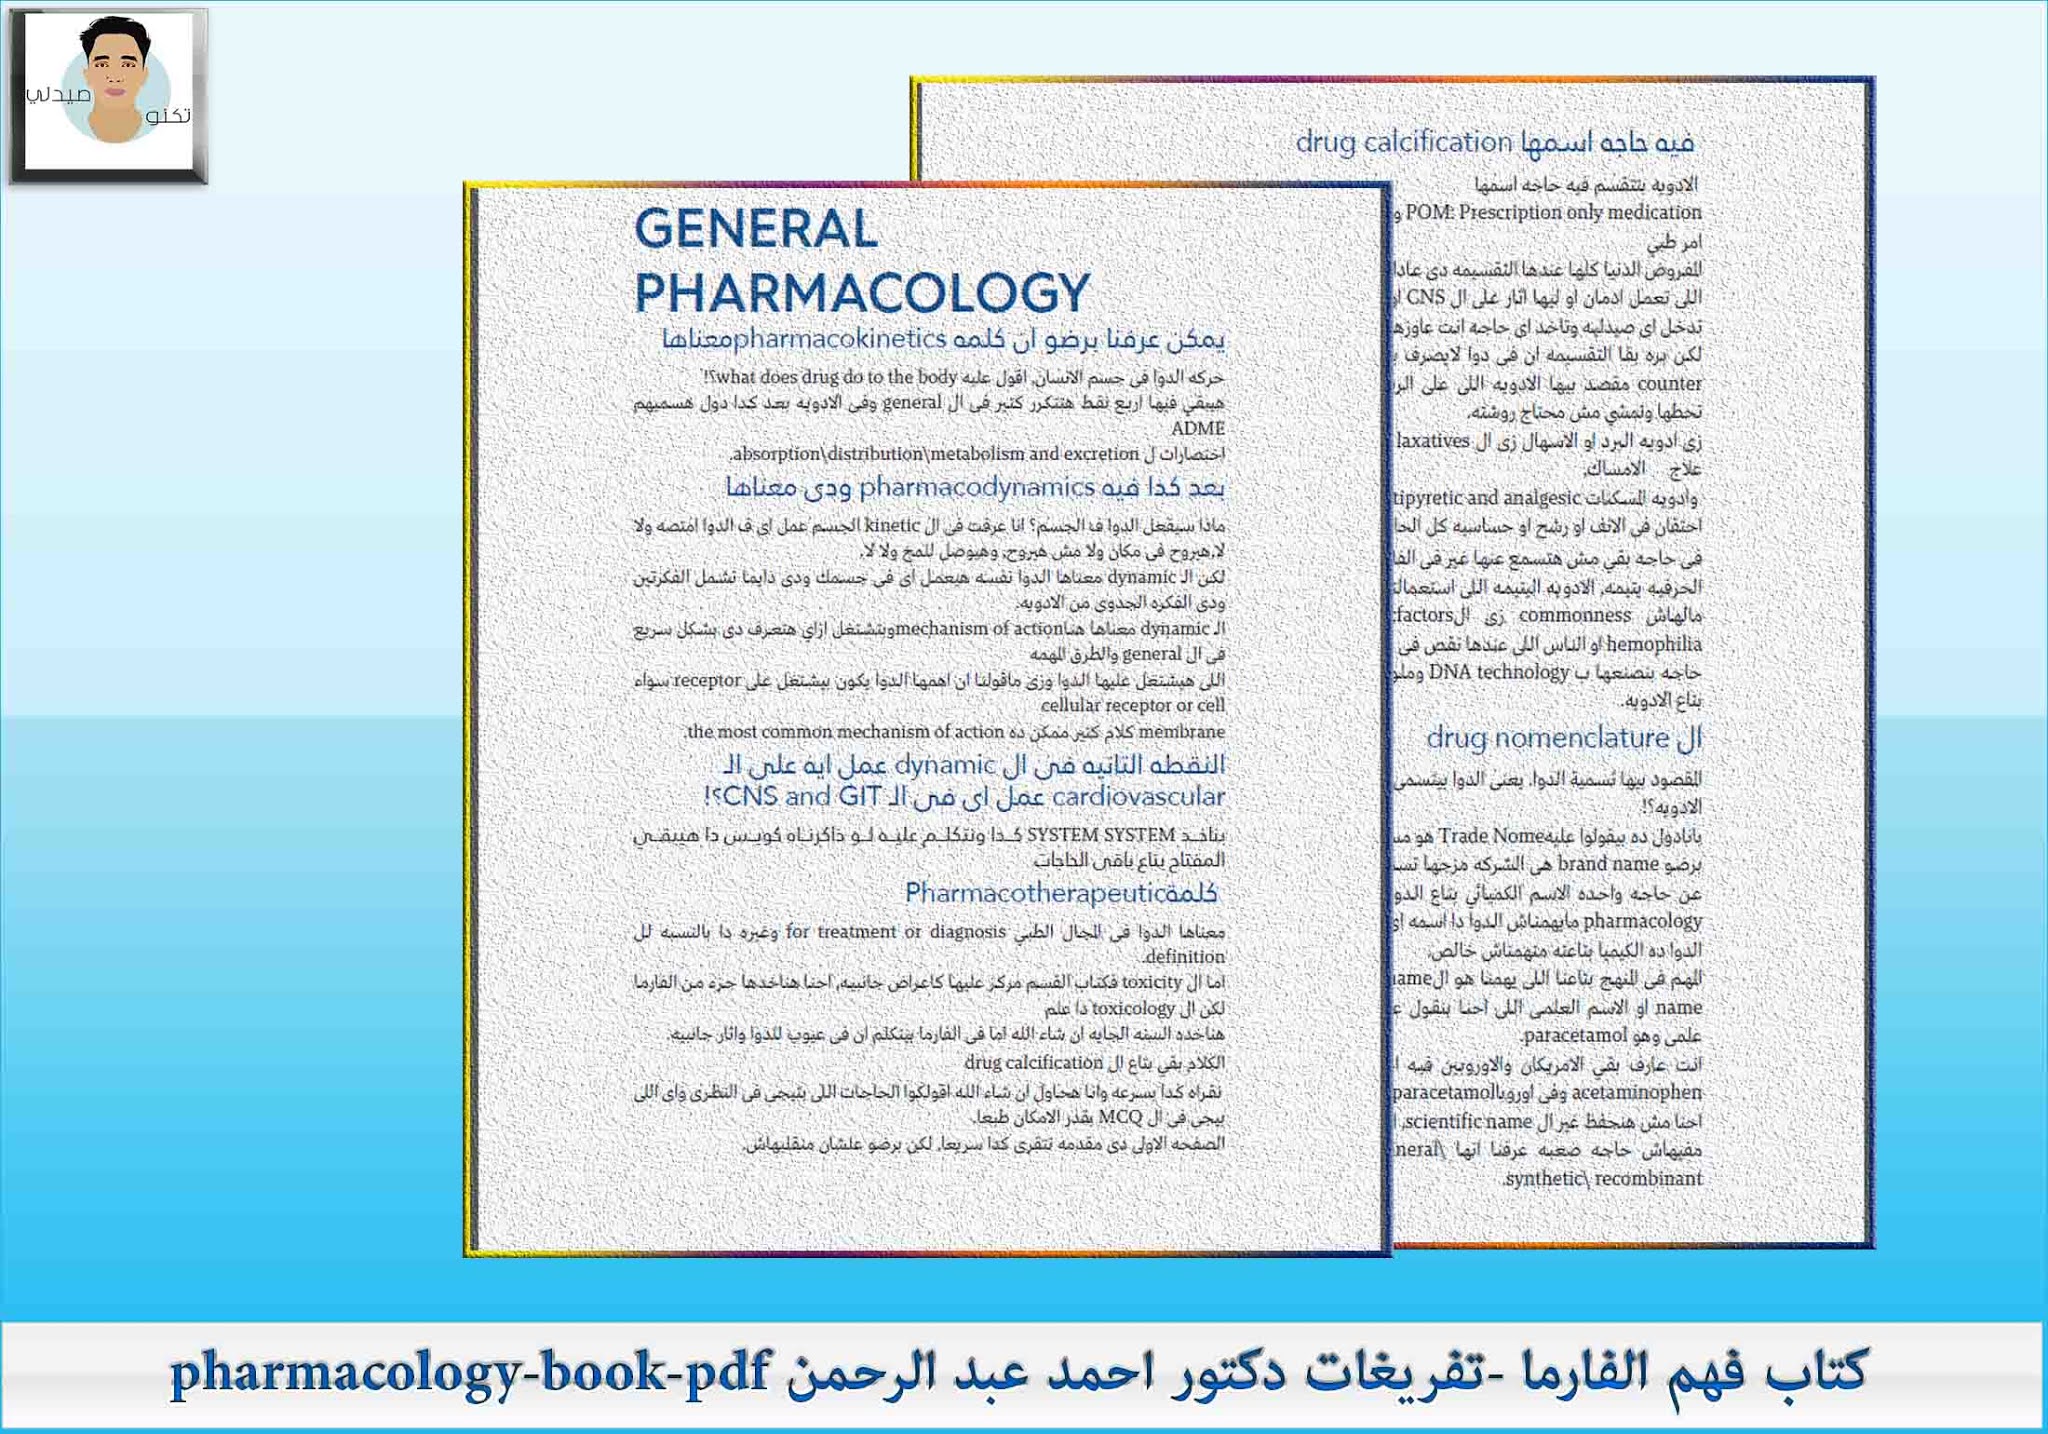 كتاب فهم الفارما -تفريغات دكتور احمد عبد الرحمن pharmacology-book-pdf